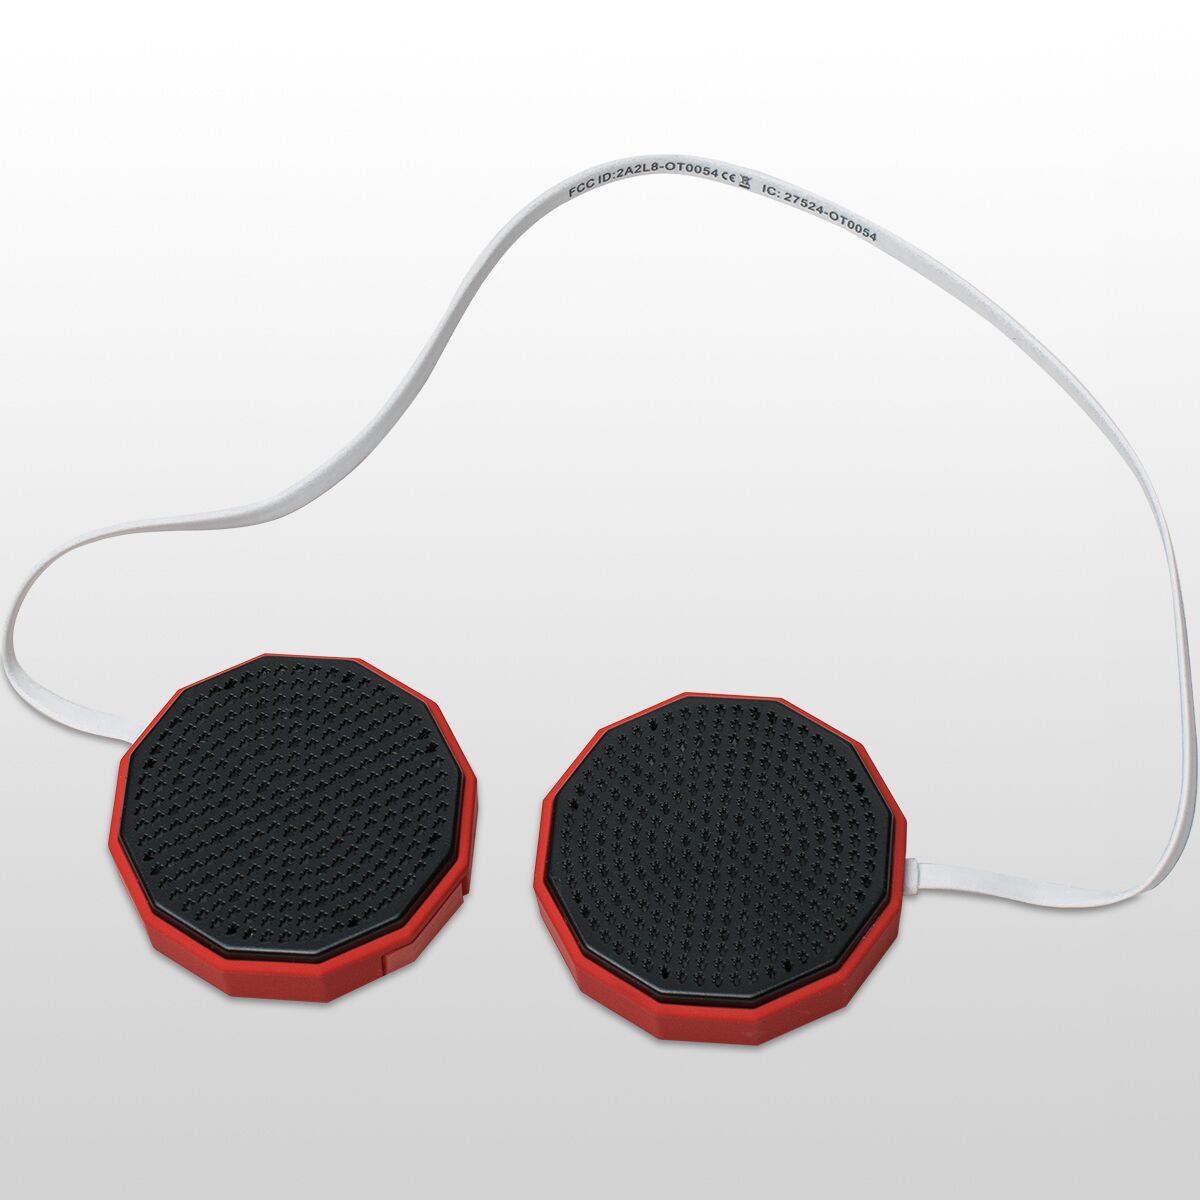 CHIPS 3.0 Беспроводная универсальная аудиосистема для шлема Outdoor Tech